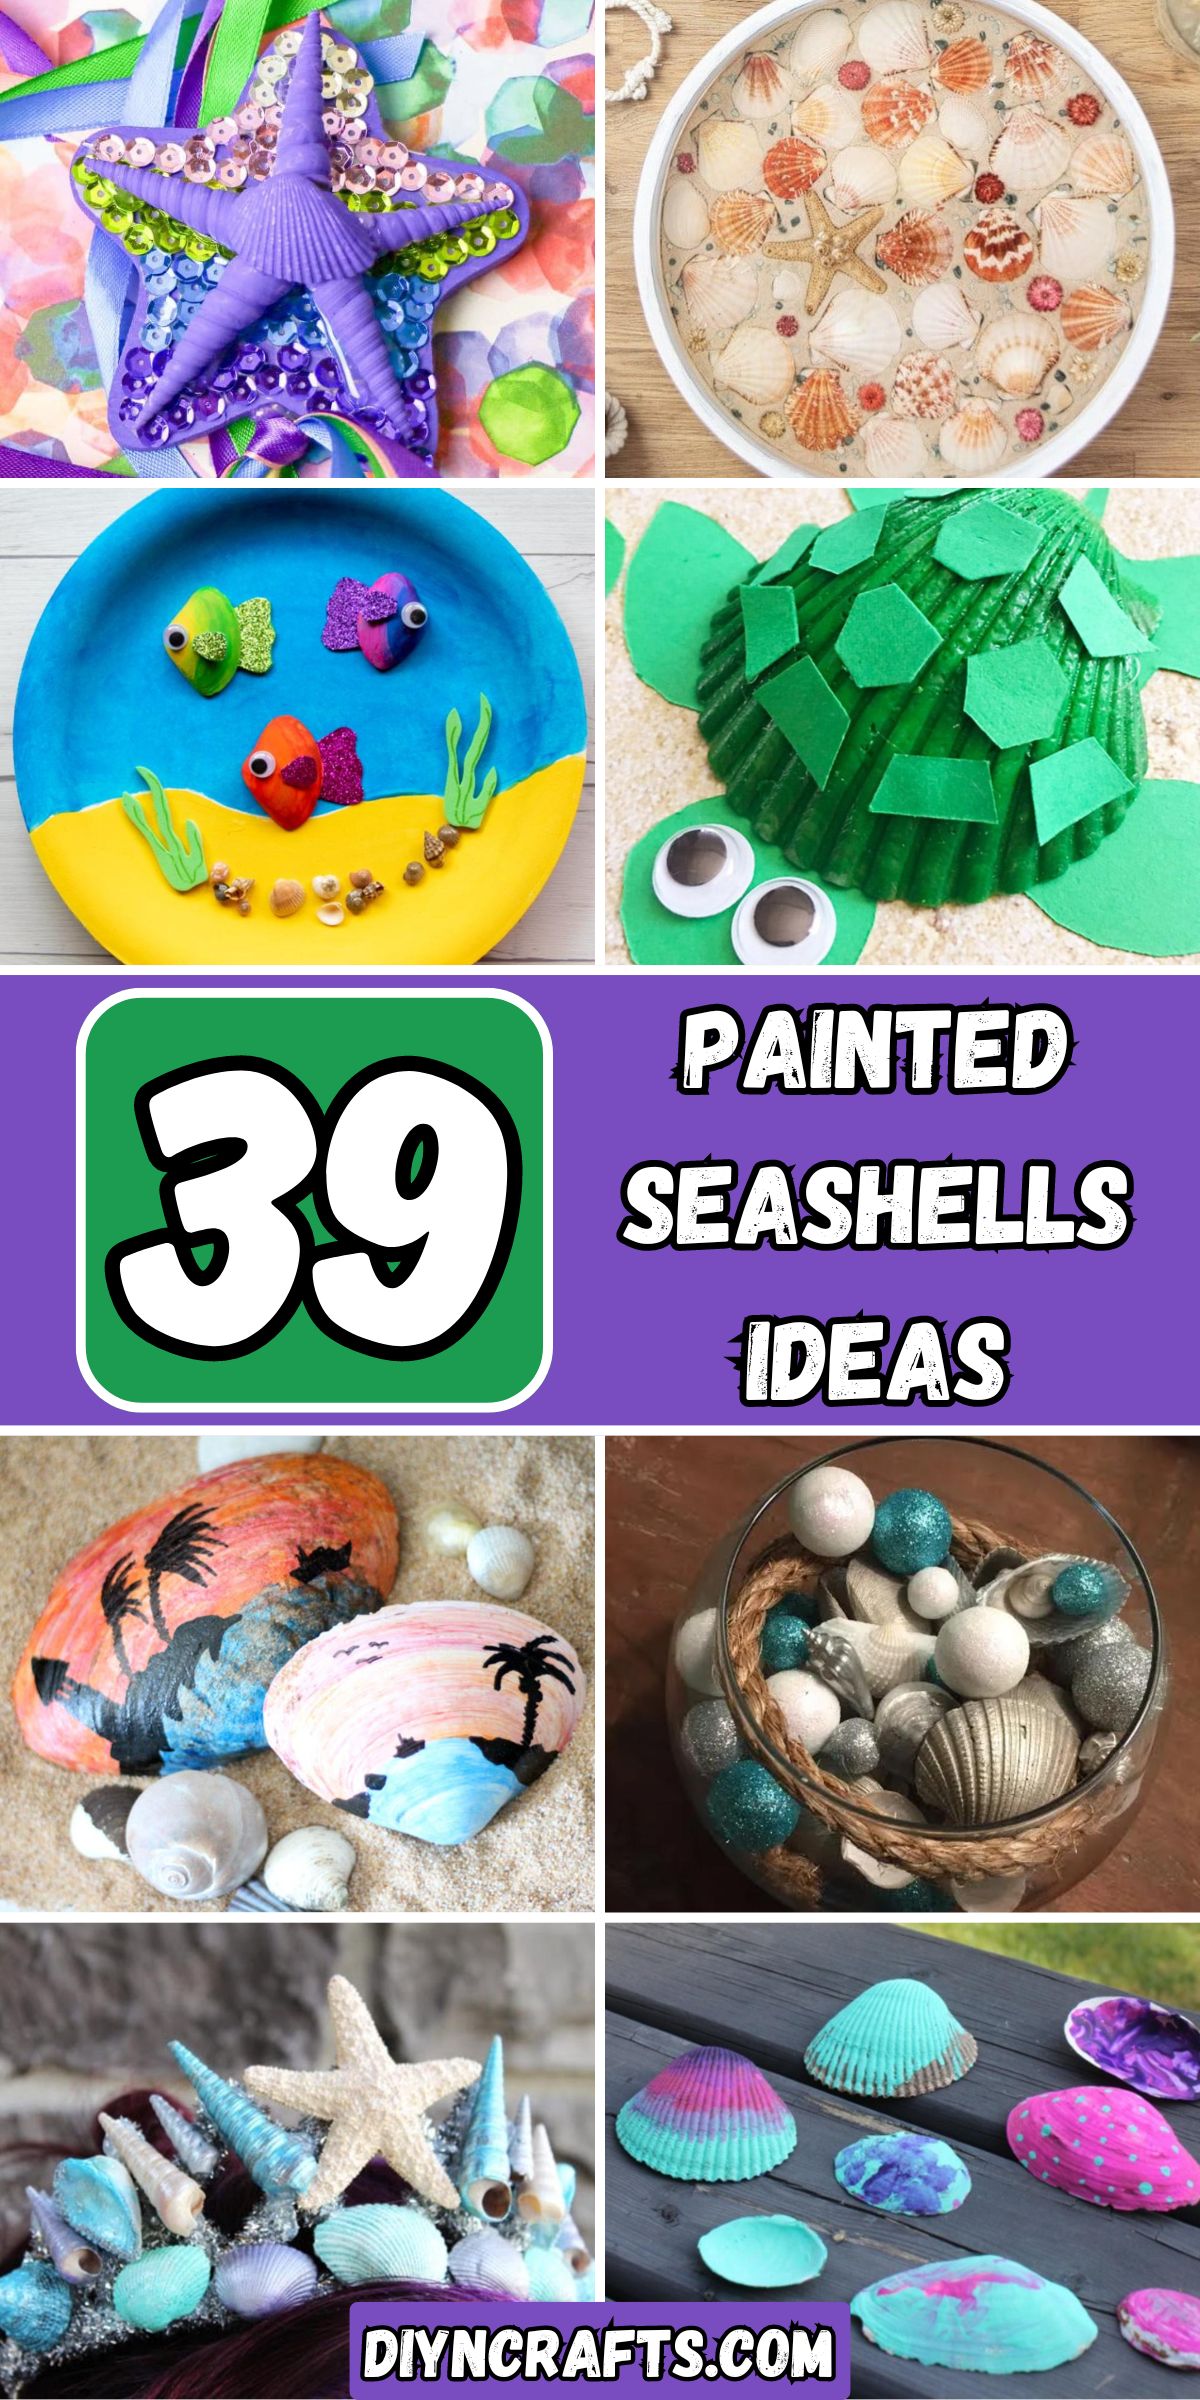 39 Painted Seashells Ideas collage.